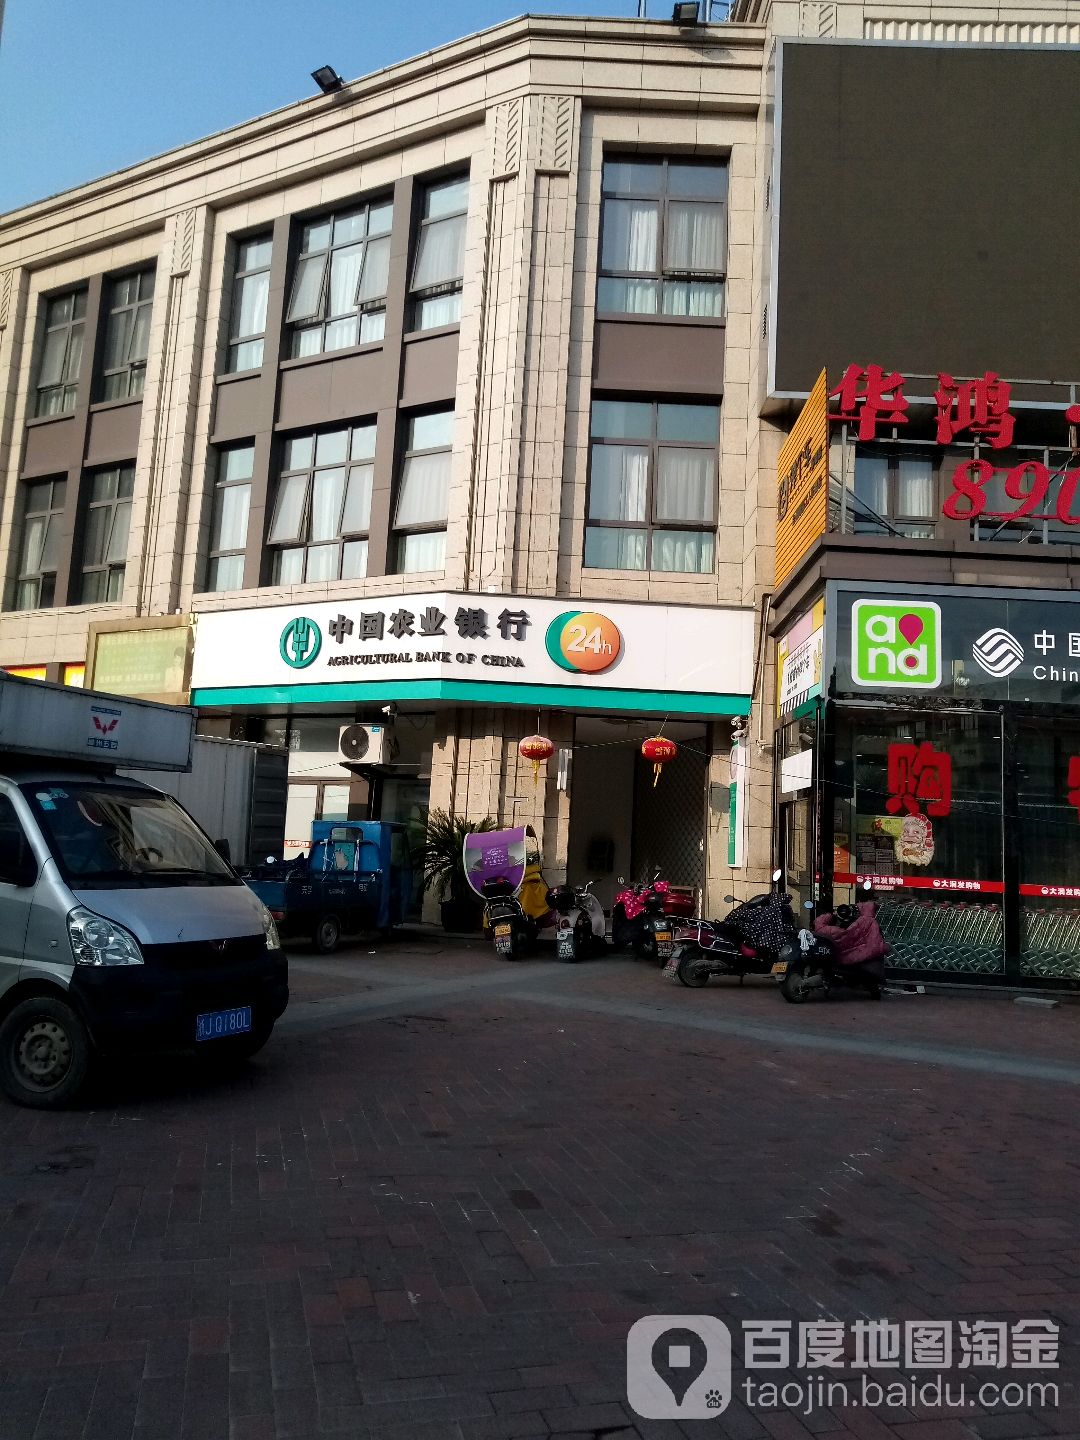 中國農業銀行24小時自助銀行服務(工人東路店)